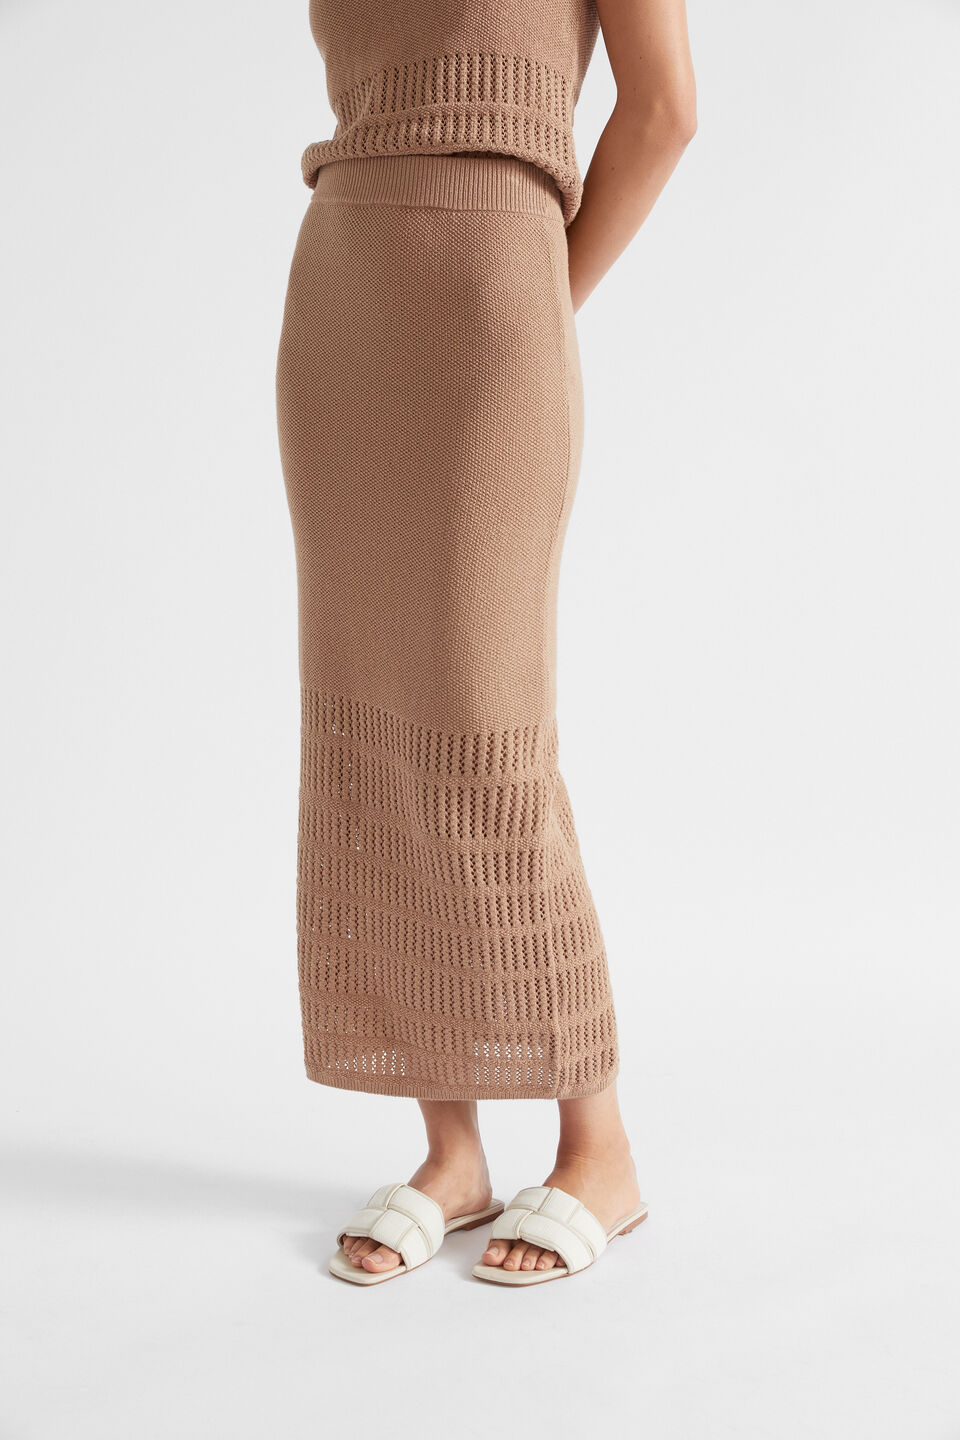 Crochet Panelled Skirt  Barley